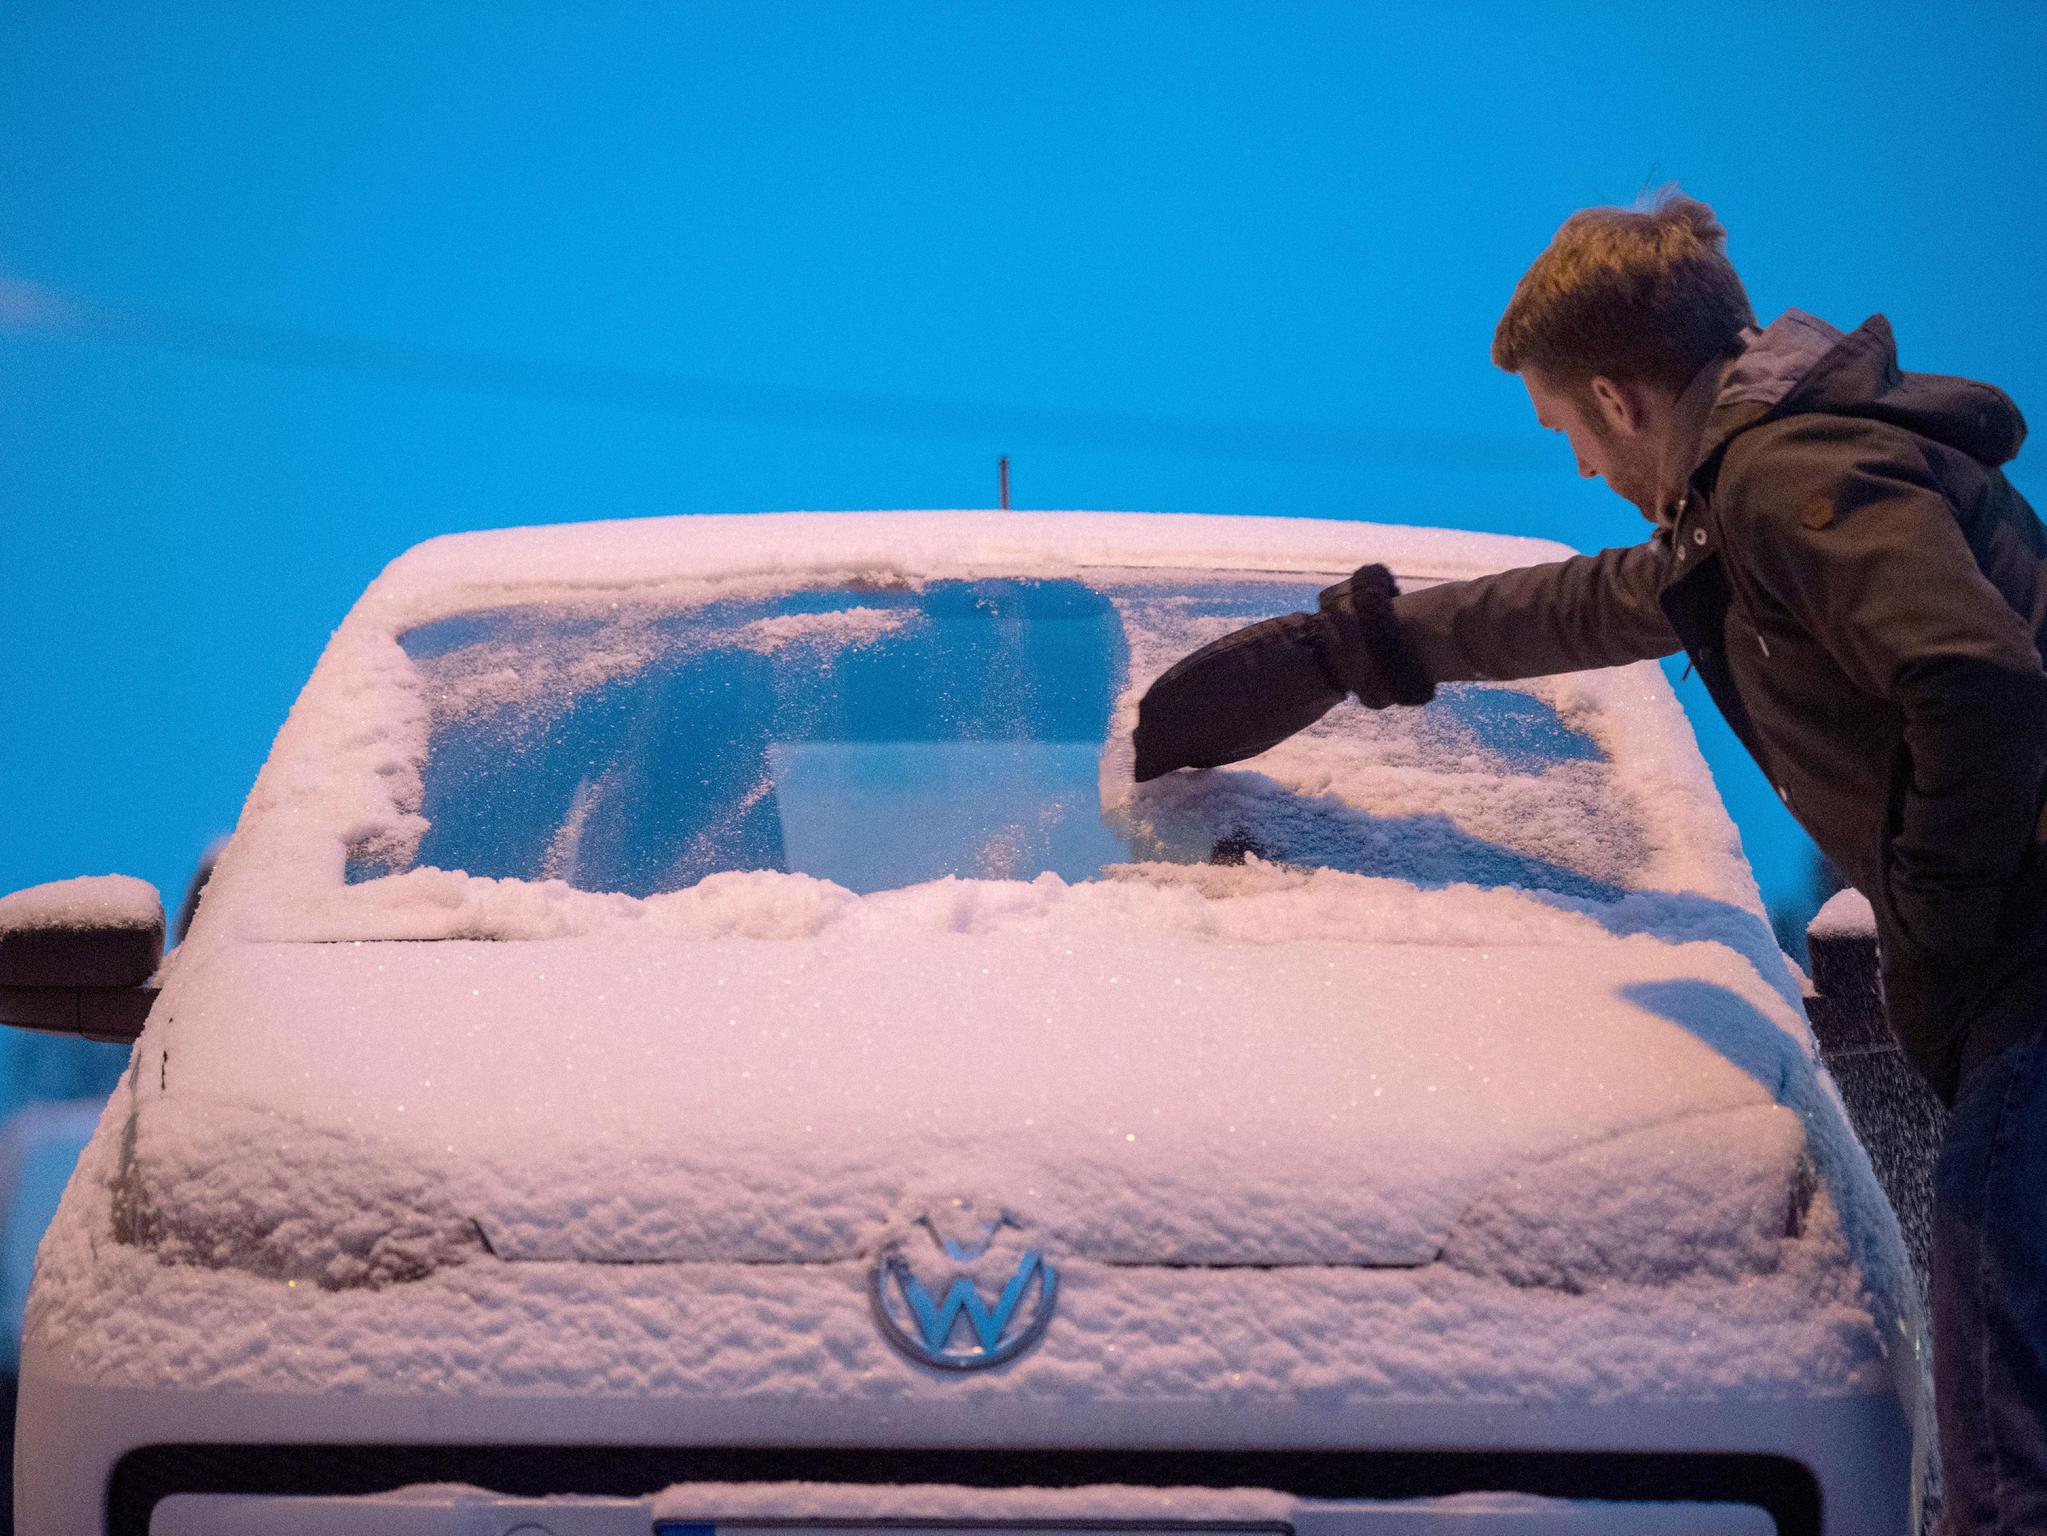 Im Winter: Das sollten Fahrer immer im Auto haben - Region & Land